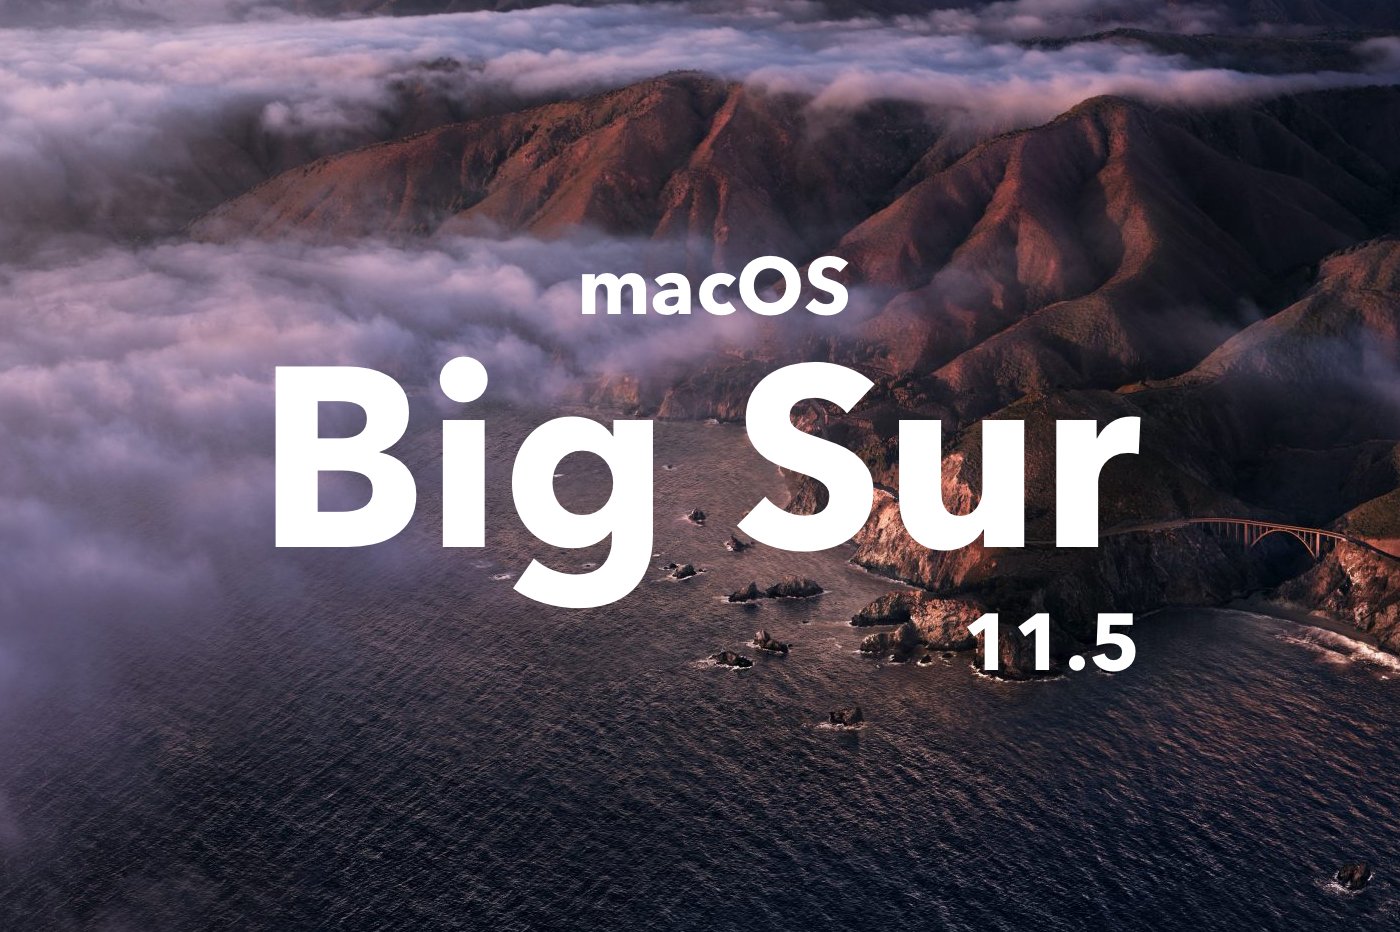 macOS Big Sur 11.5